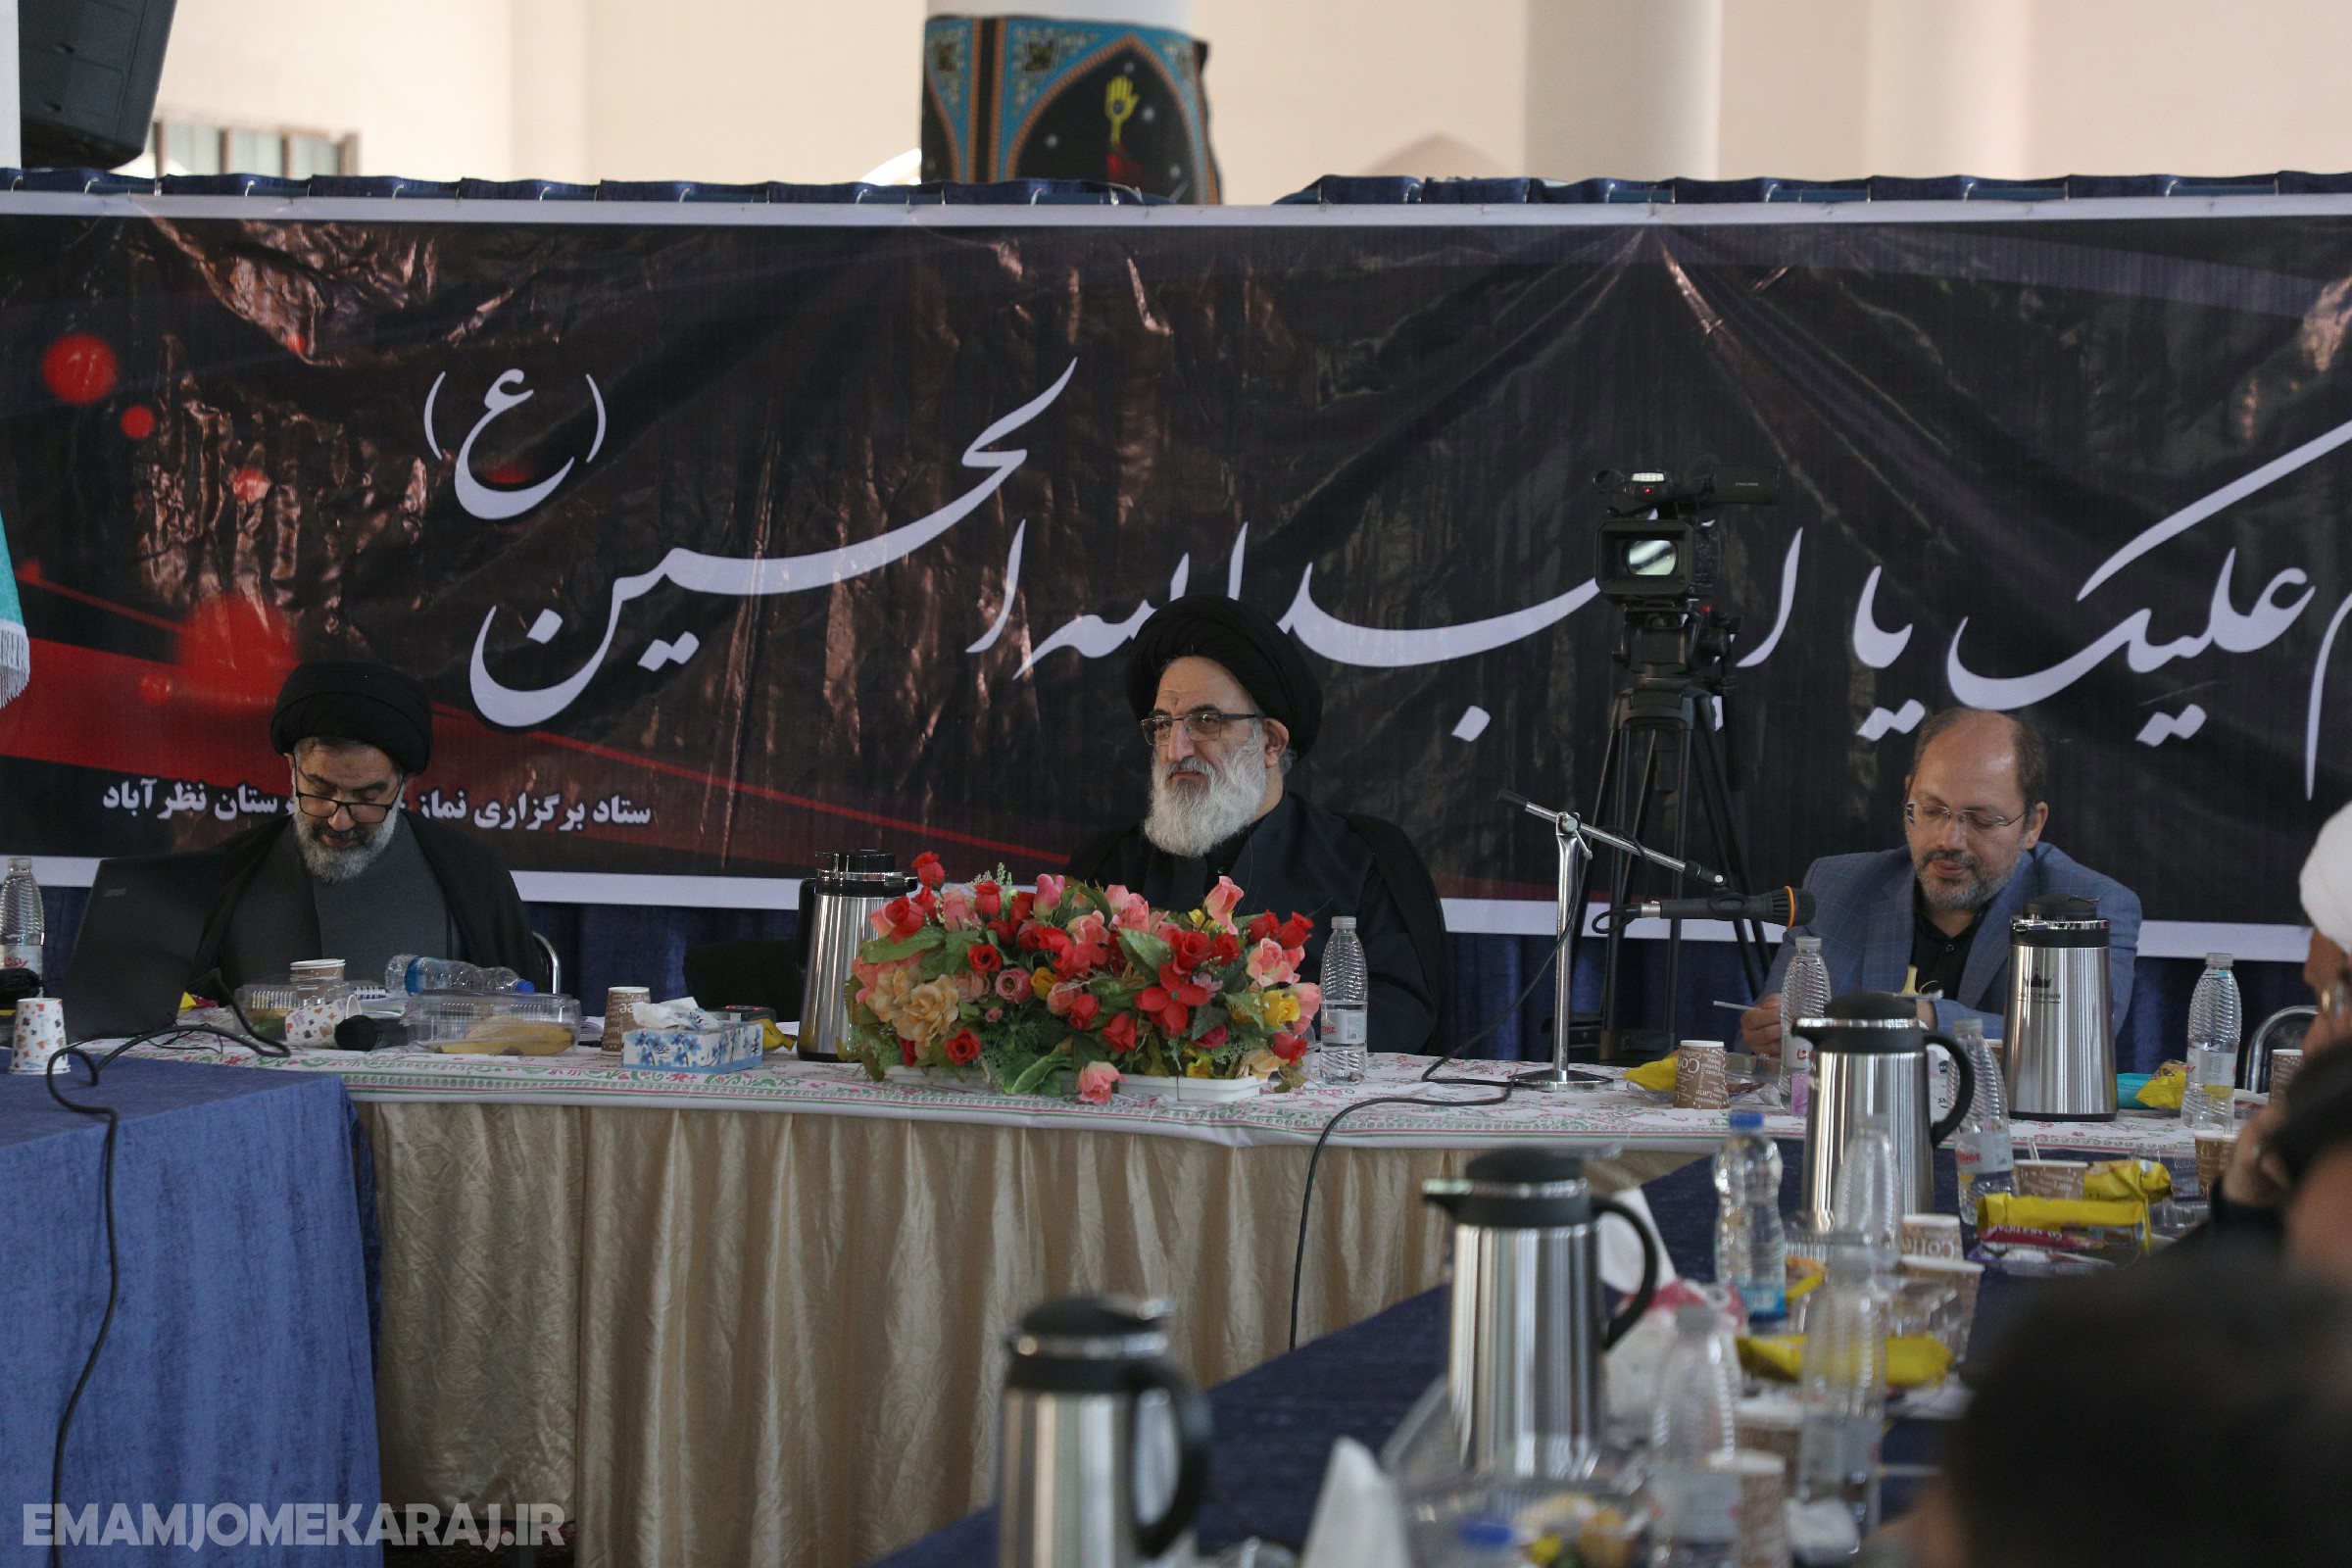 هشتاد و ششمین همایش ماهانه ائمه جمعه استان البرز برگزار شد.